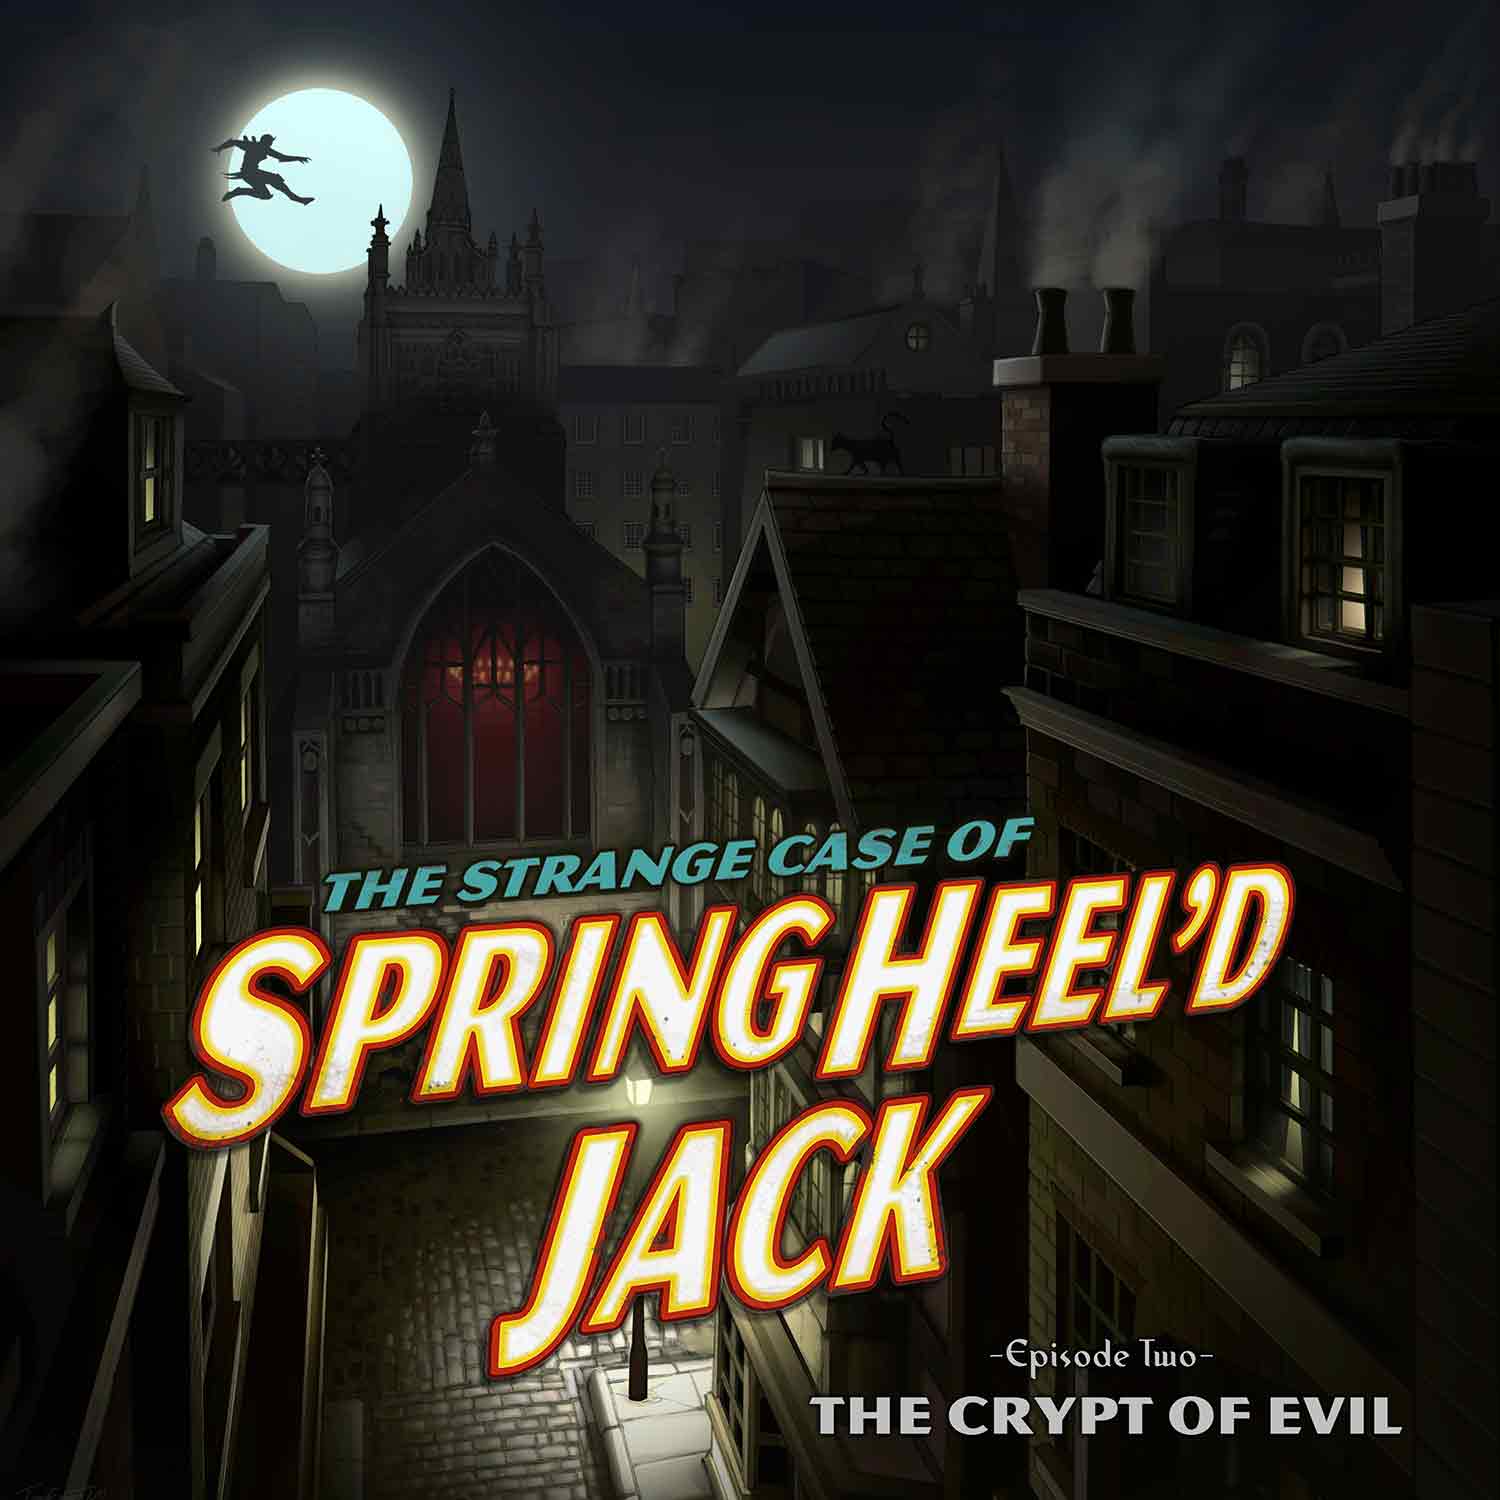 SHJ - S1E2 - The Strange Case of Springheel'd Jack - The Crypt of Evil